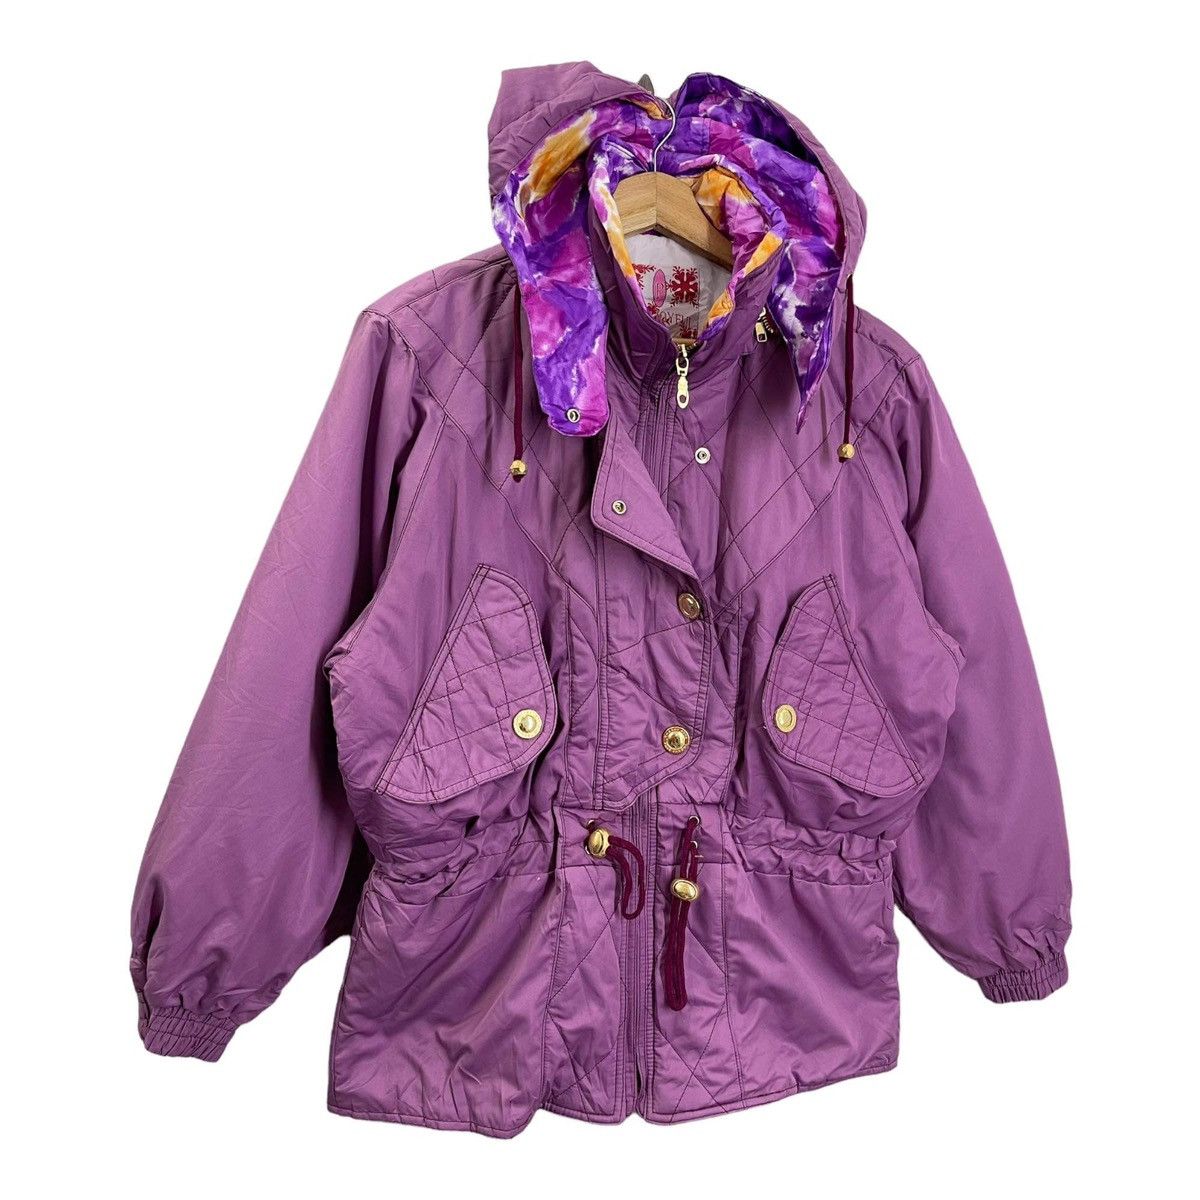 Vintage - LADIES💥 Plus Joy Ful Hoodies Ski Jacket Size M - 2